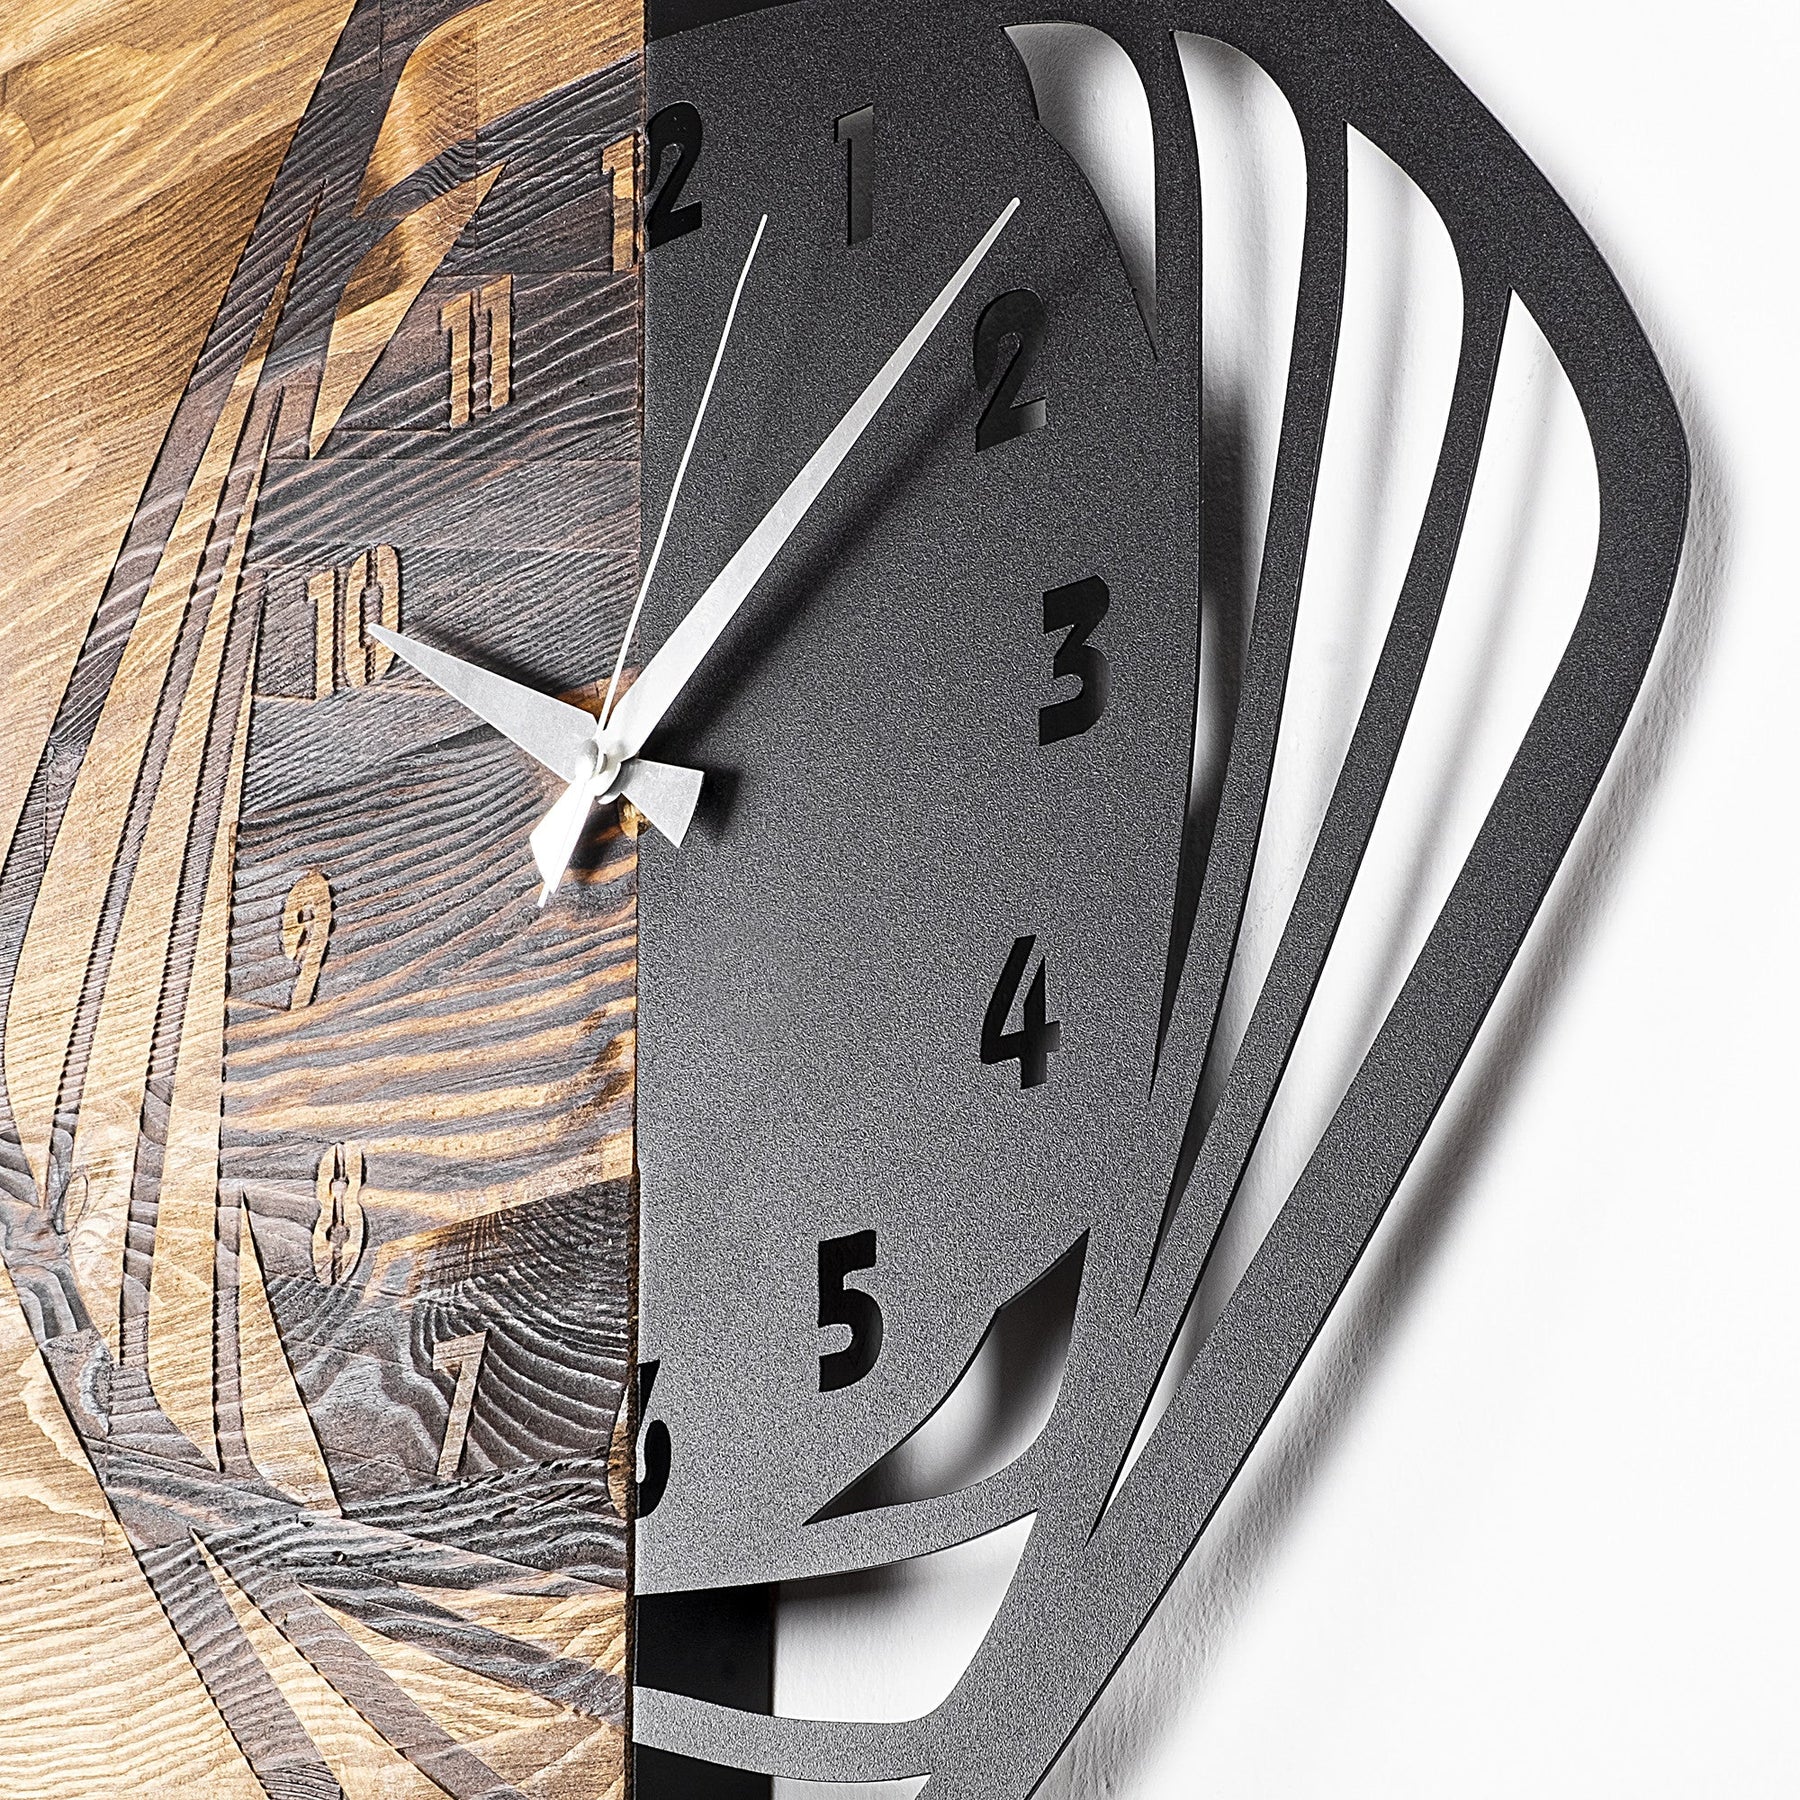 Ceas decorativ Clock 4, negru/stejar, lemn/metal, 57x58 cm